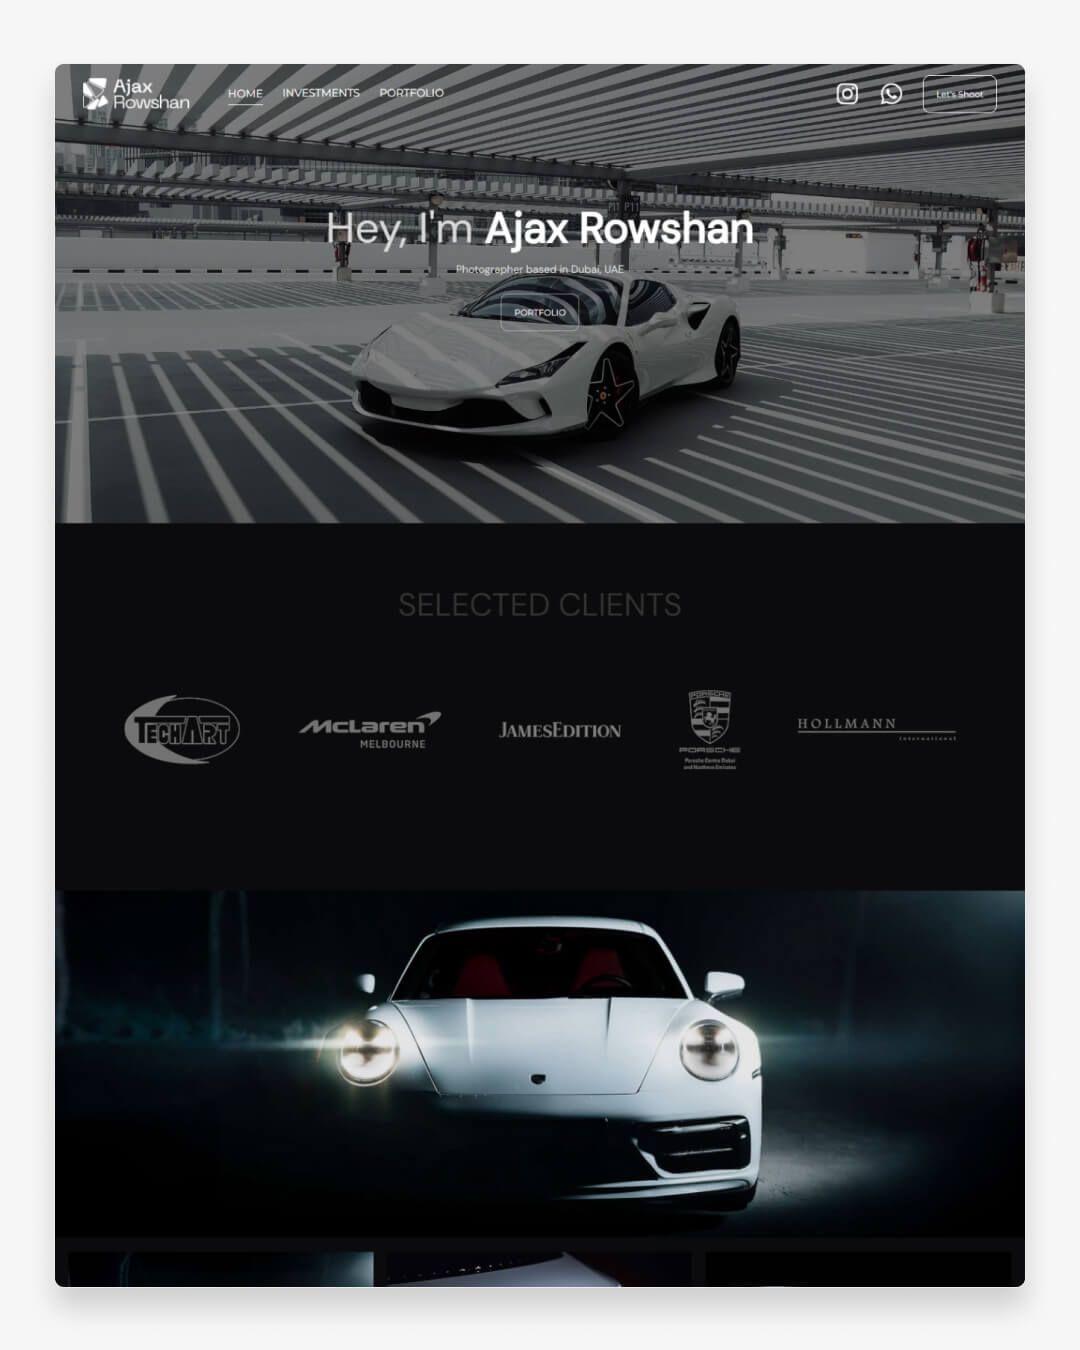 Sito web dell'Ajax Rowshan Portfolio con immagini di auto